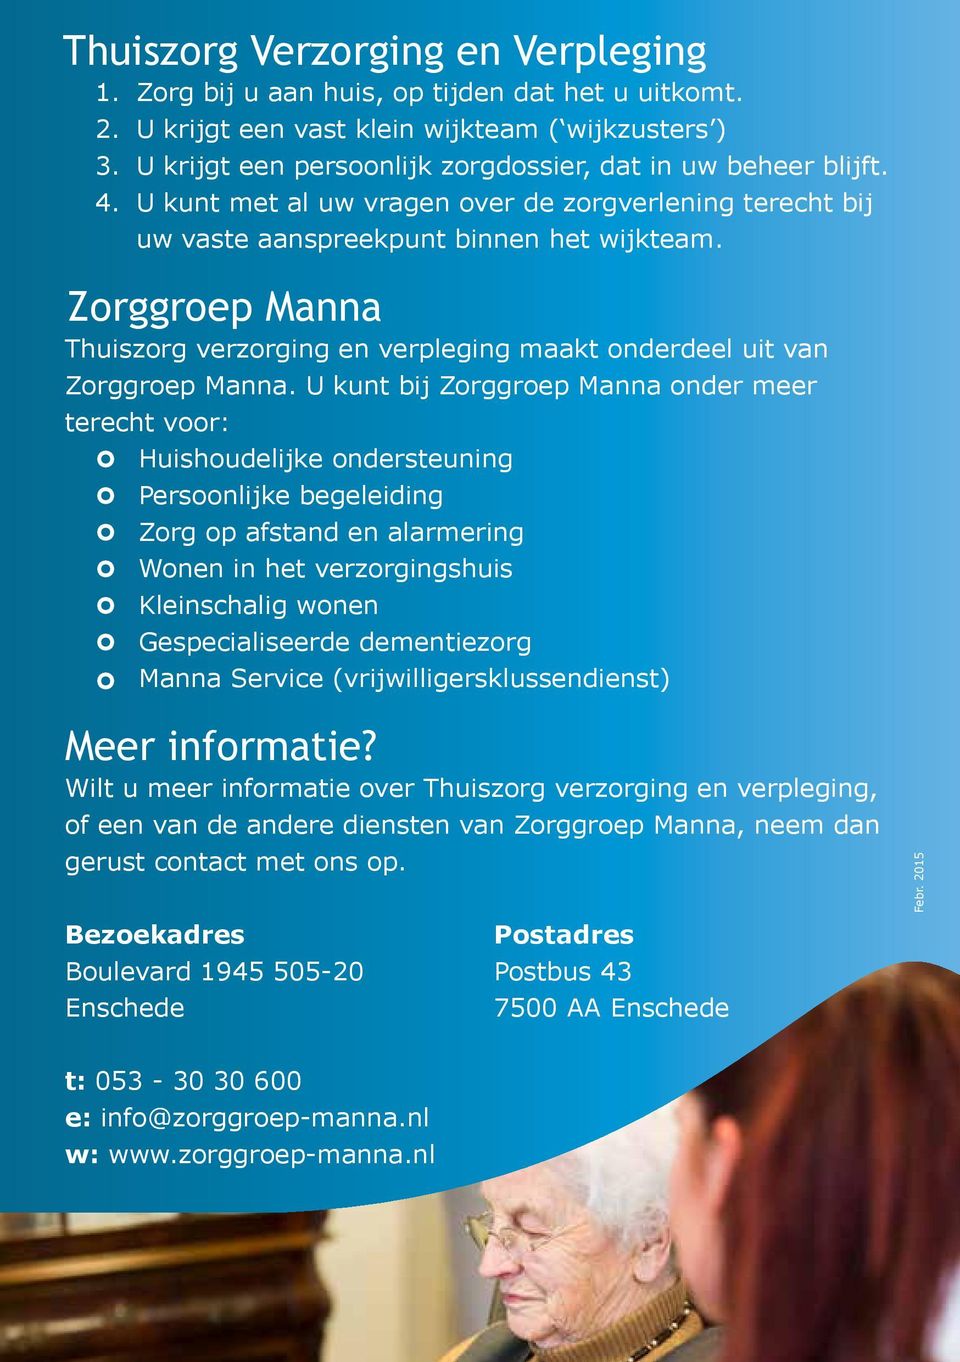 Zorggroep Manna Thuiszorg verzorging en verpleging maakt onderdeel uit van Zorggroep Manna.